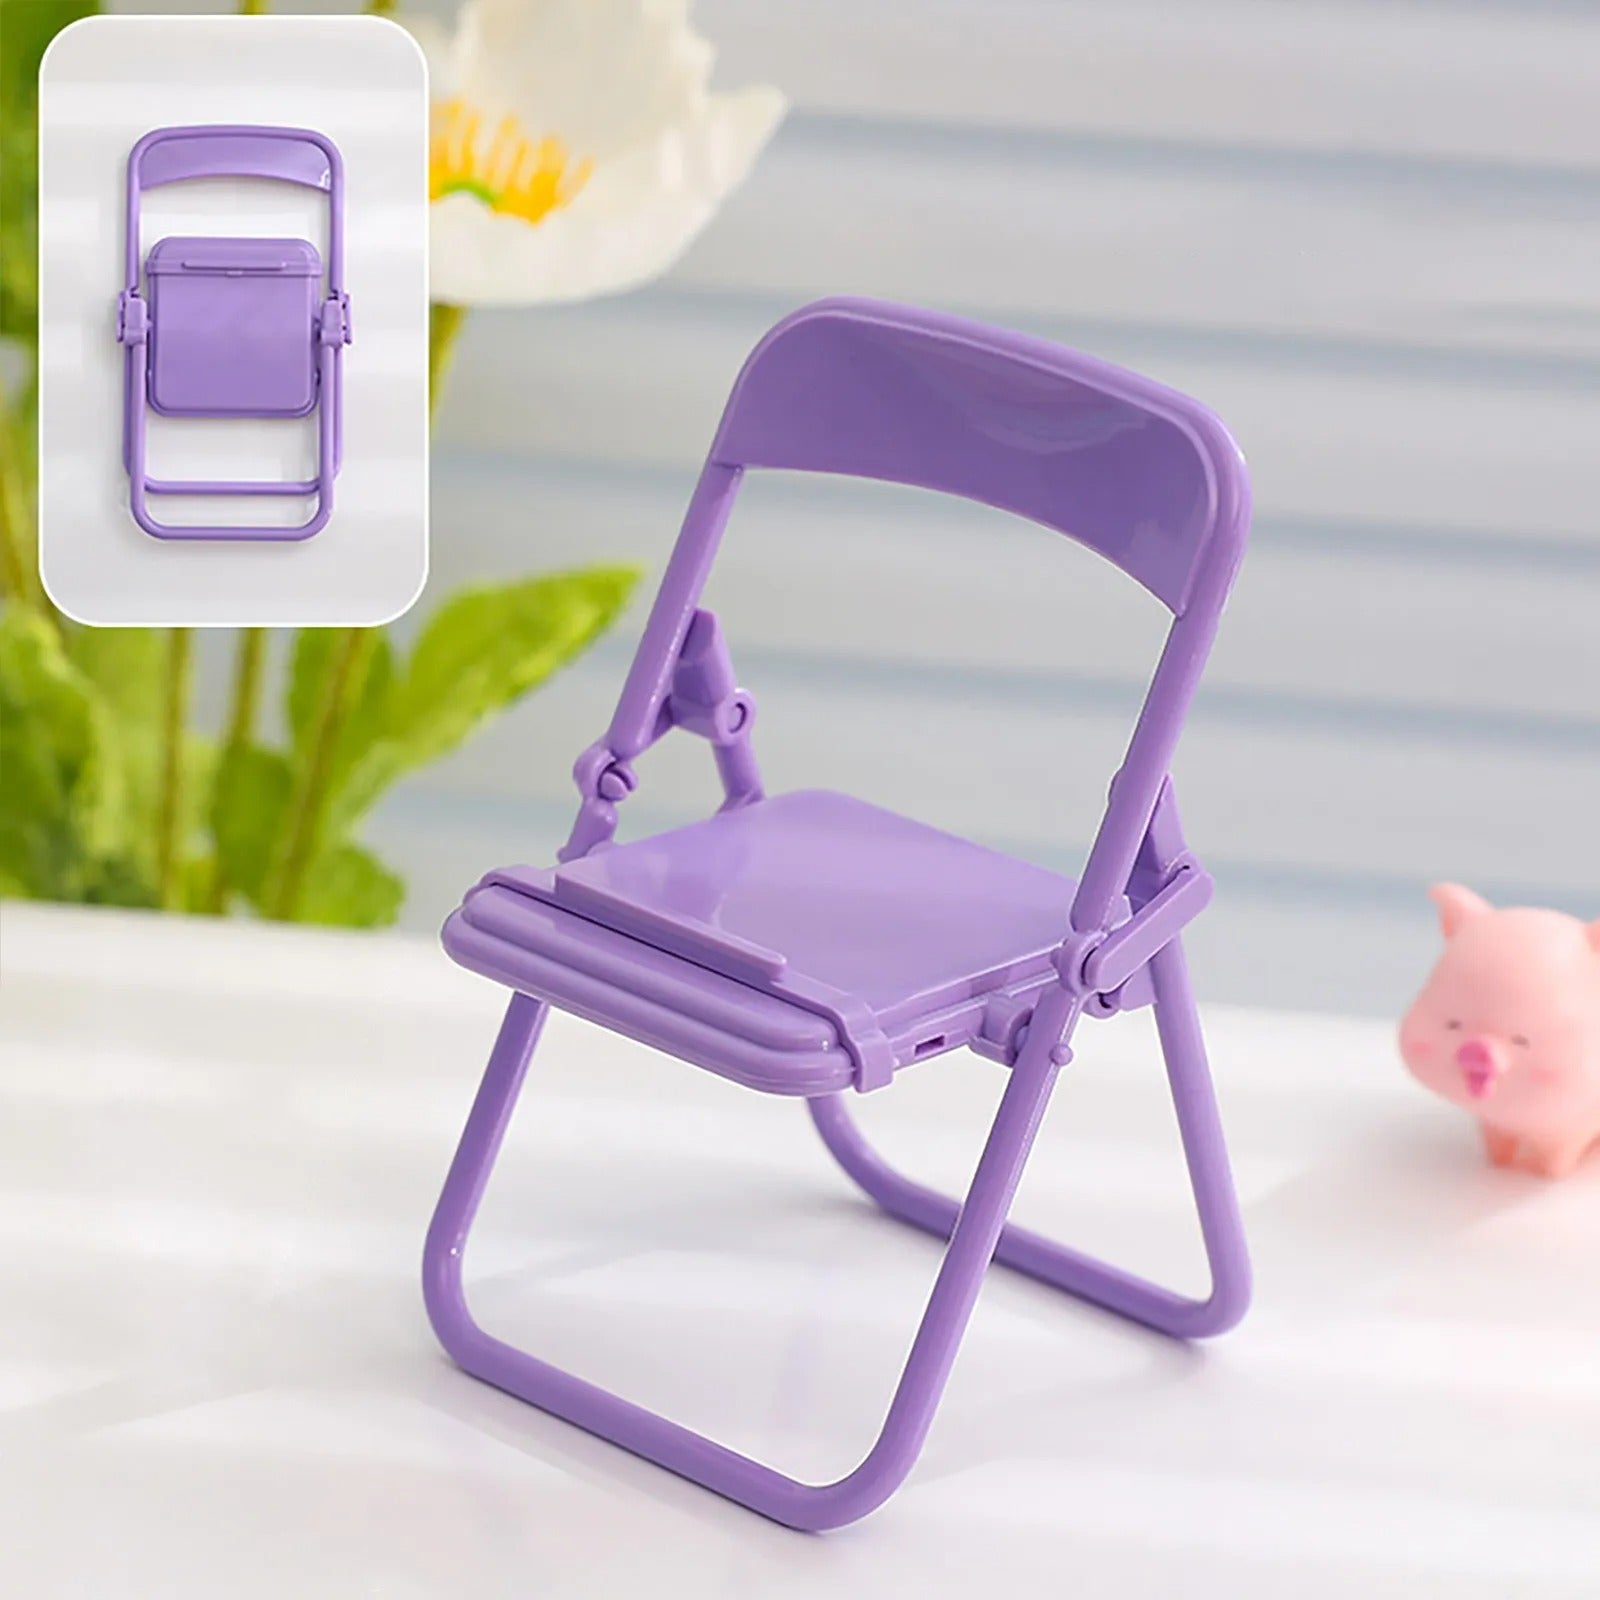 Chair designed Mobile Holder